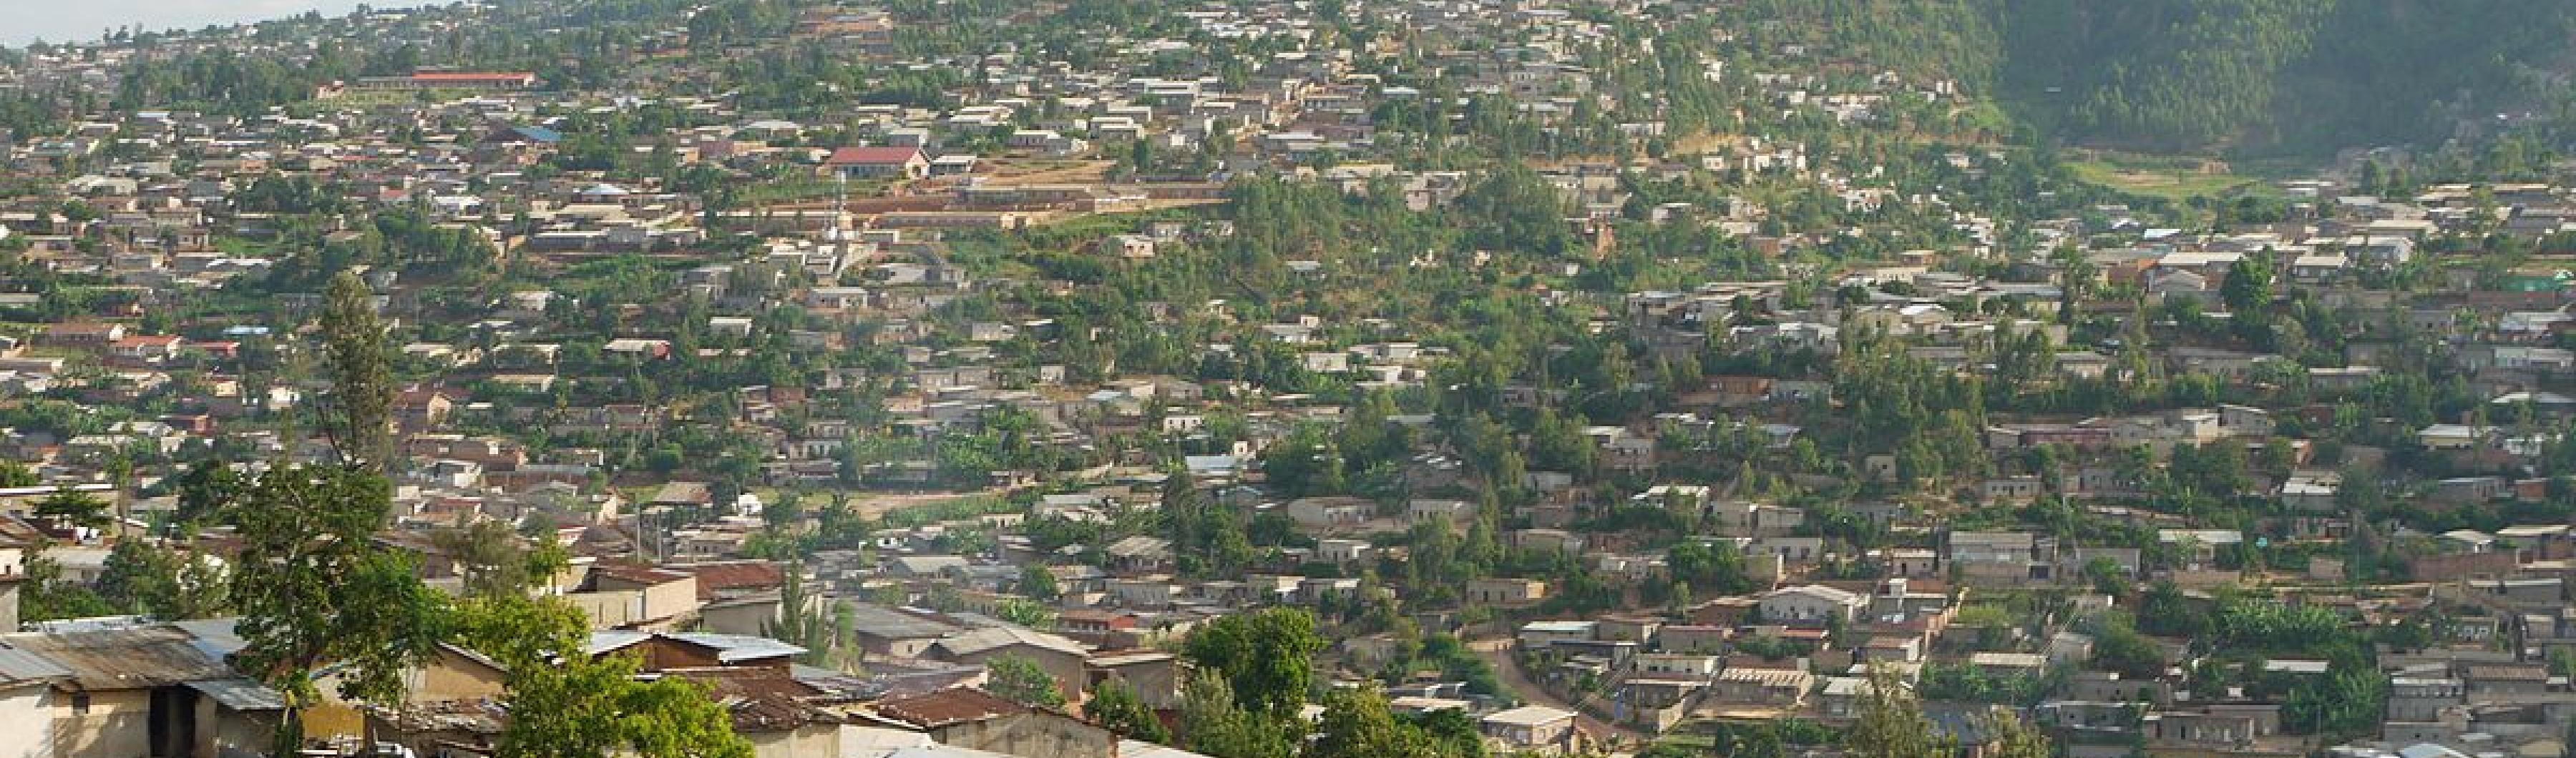 Pinggiran kota Kigali dengan Gunung Kigali sebagai latar belakang